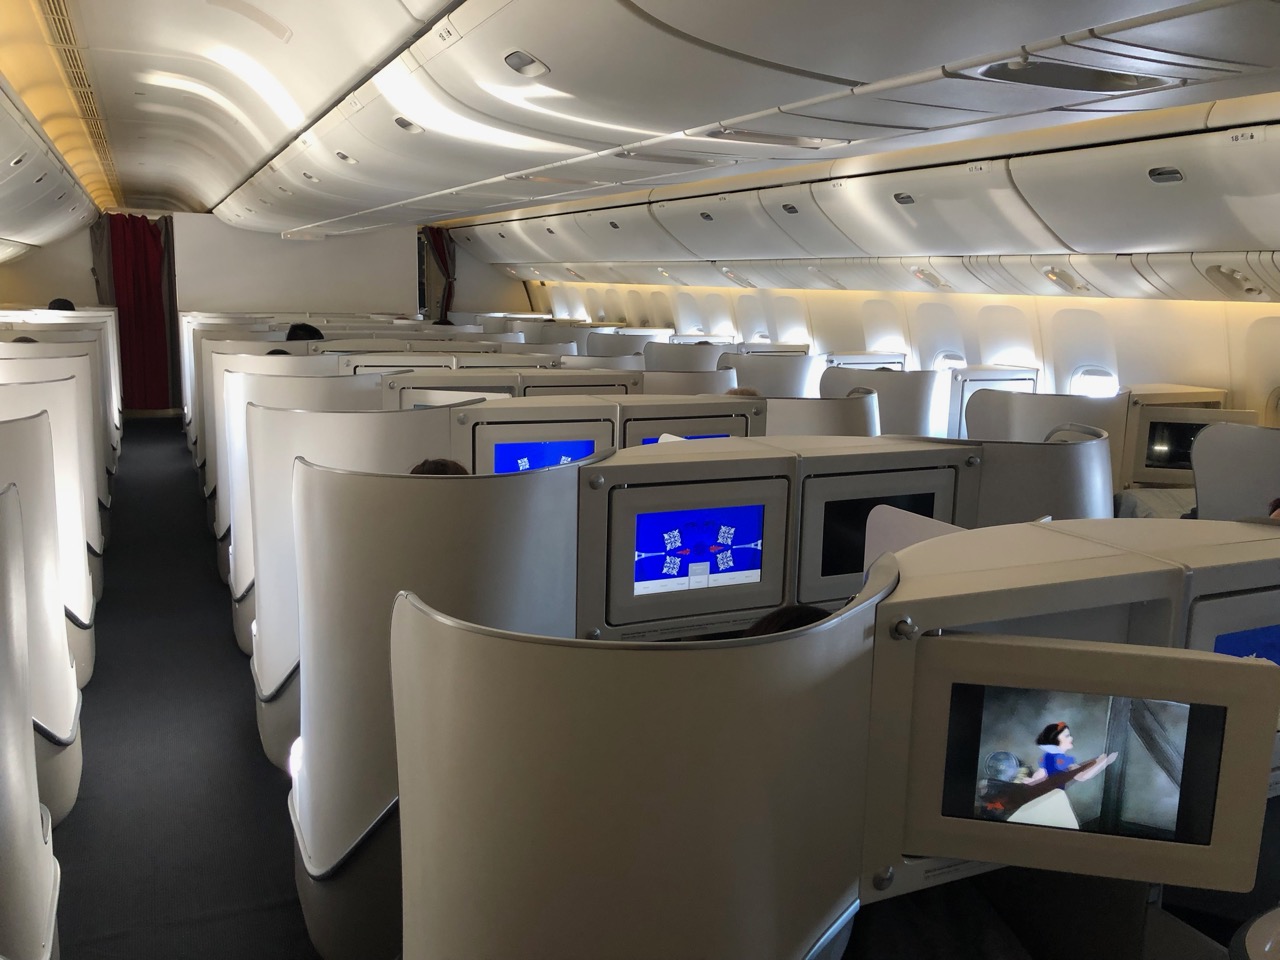 REVIEW: Air France B777-200ER business class review - C'est